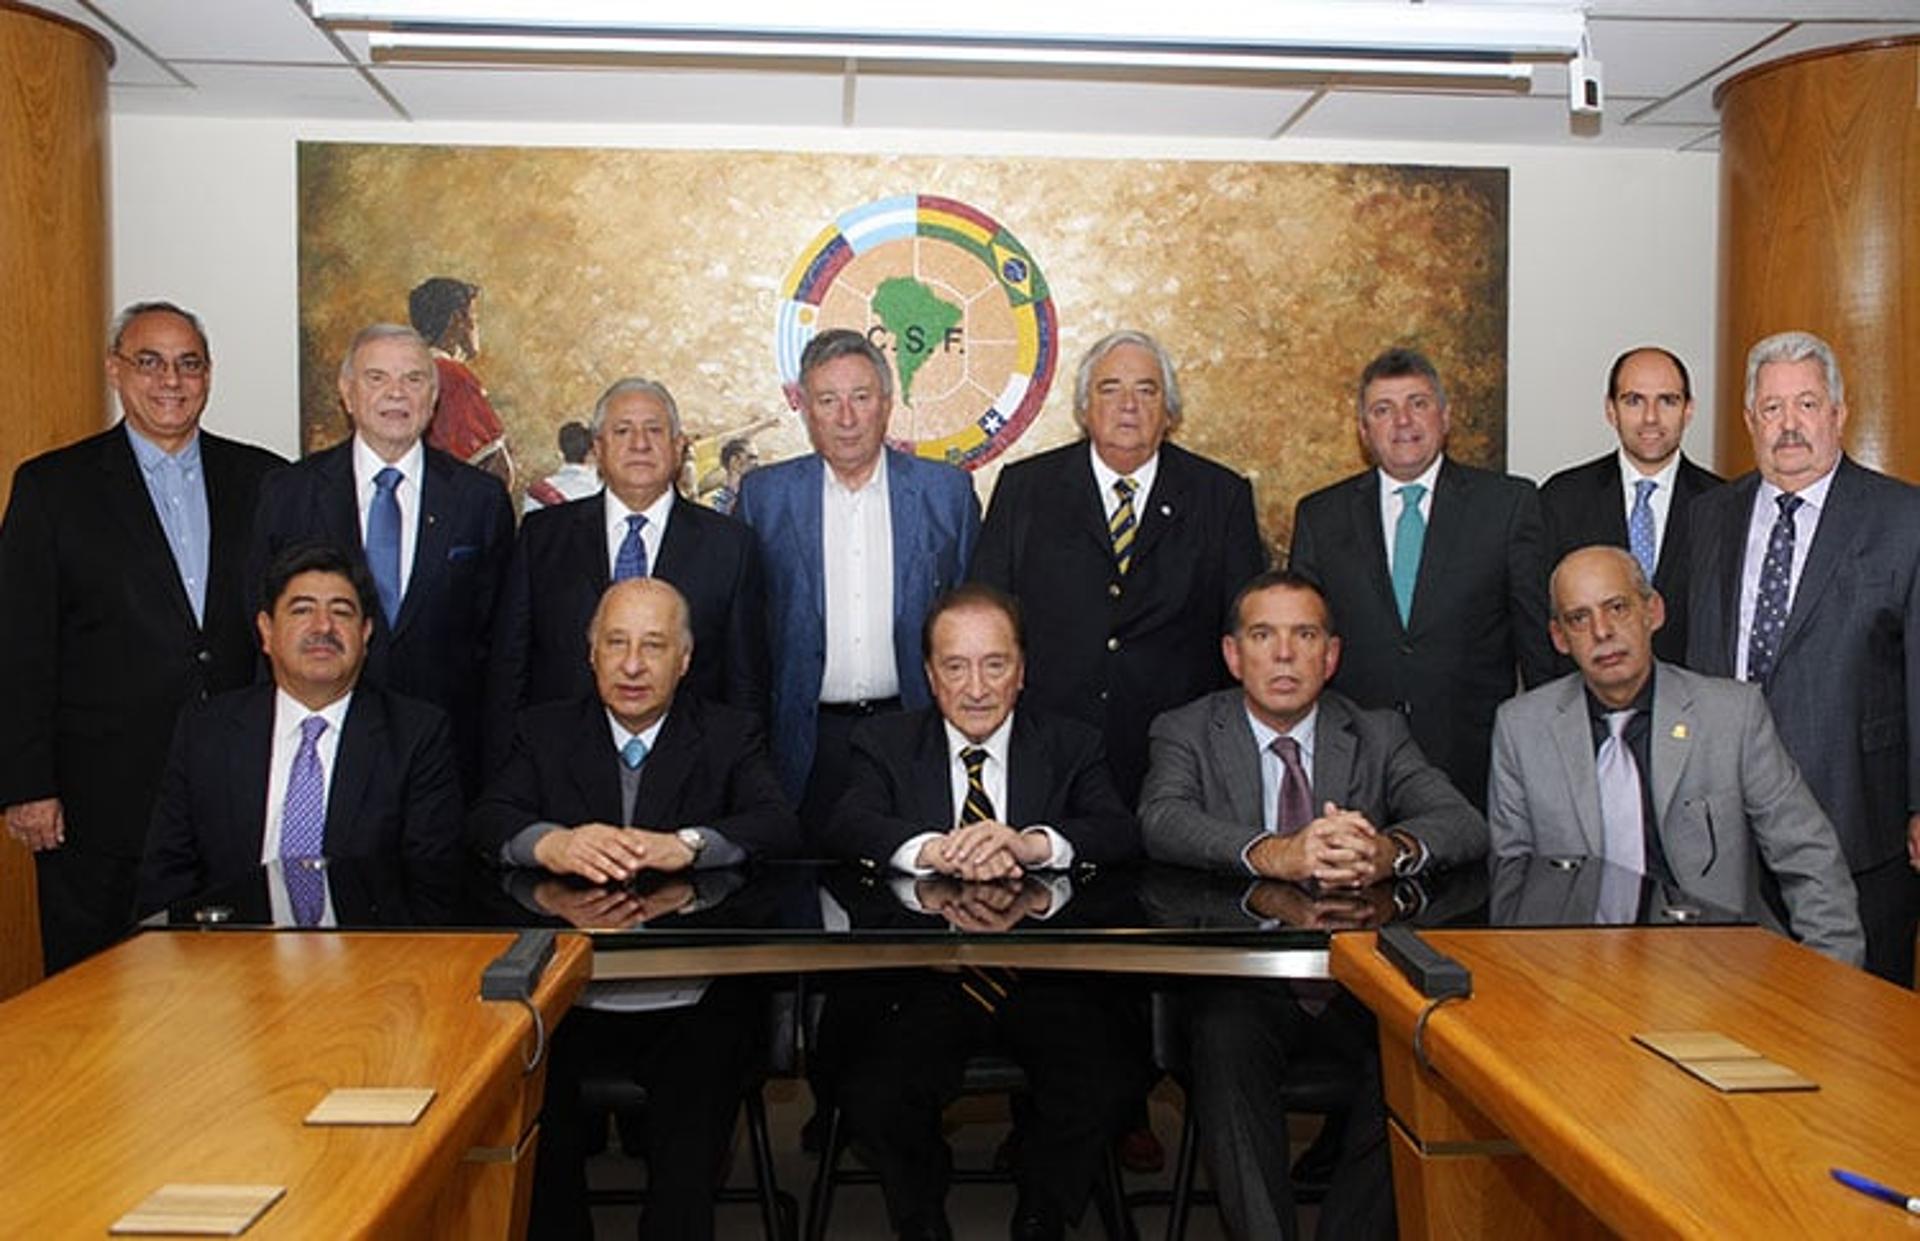 Composição do Comitê Executivo da Conmebol mudou muito por causa dos escândalos (Foto: Conmebol)